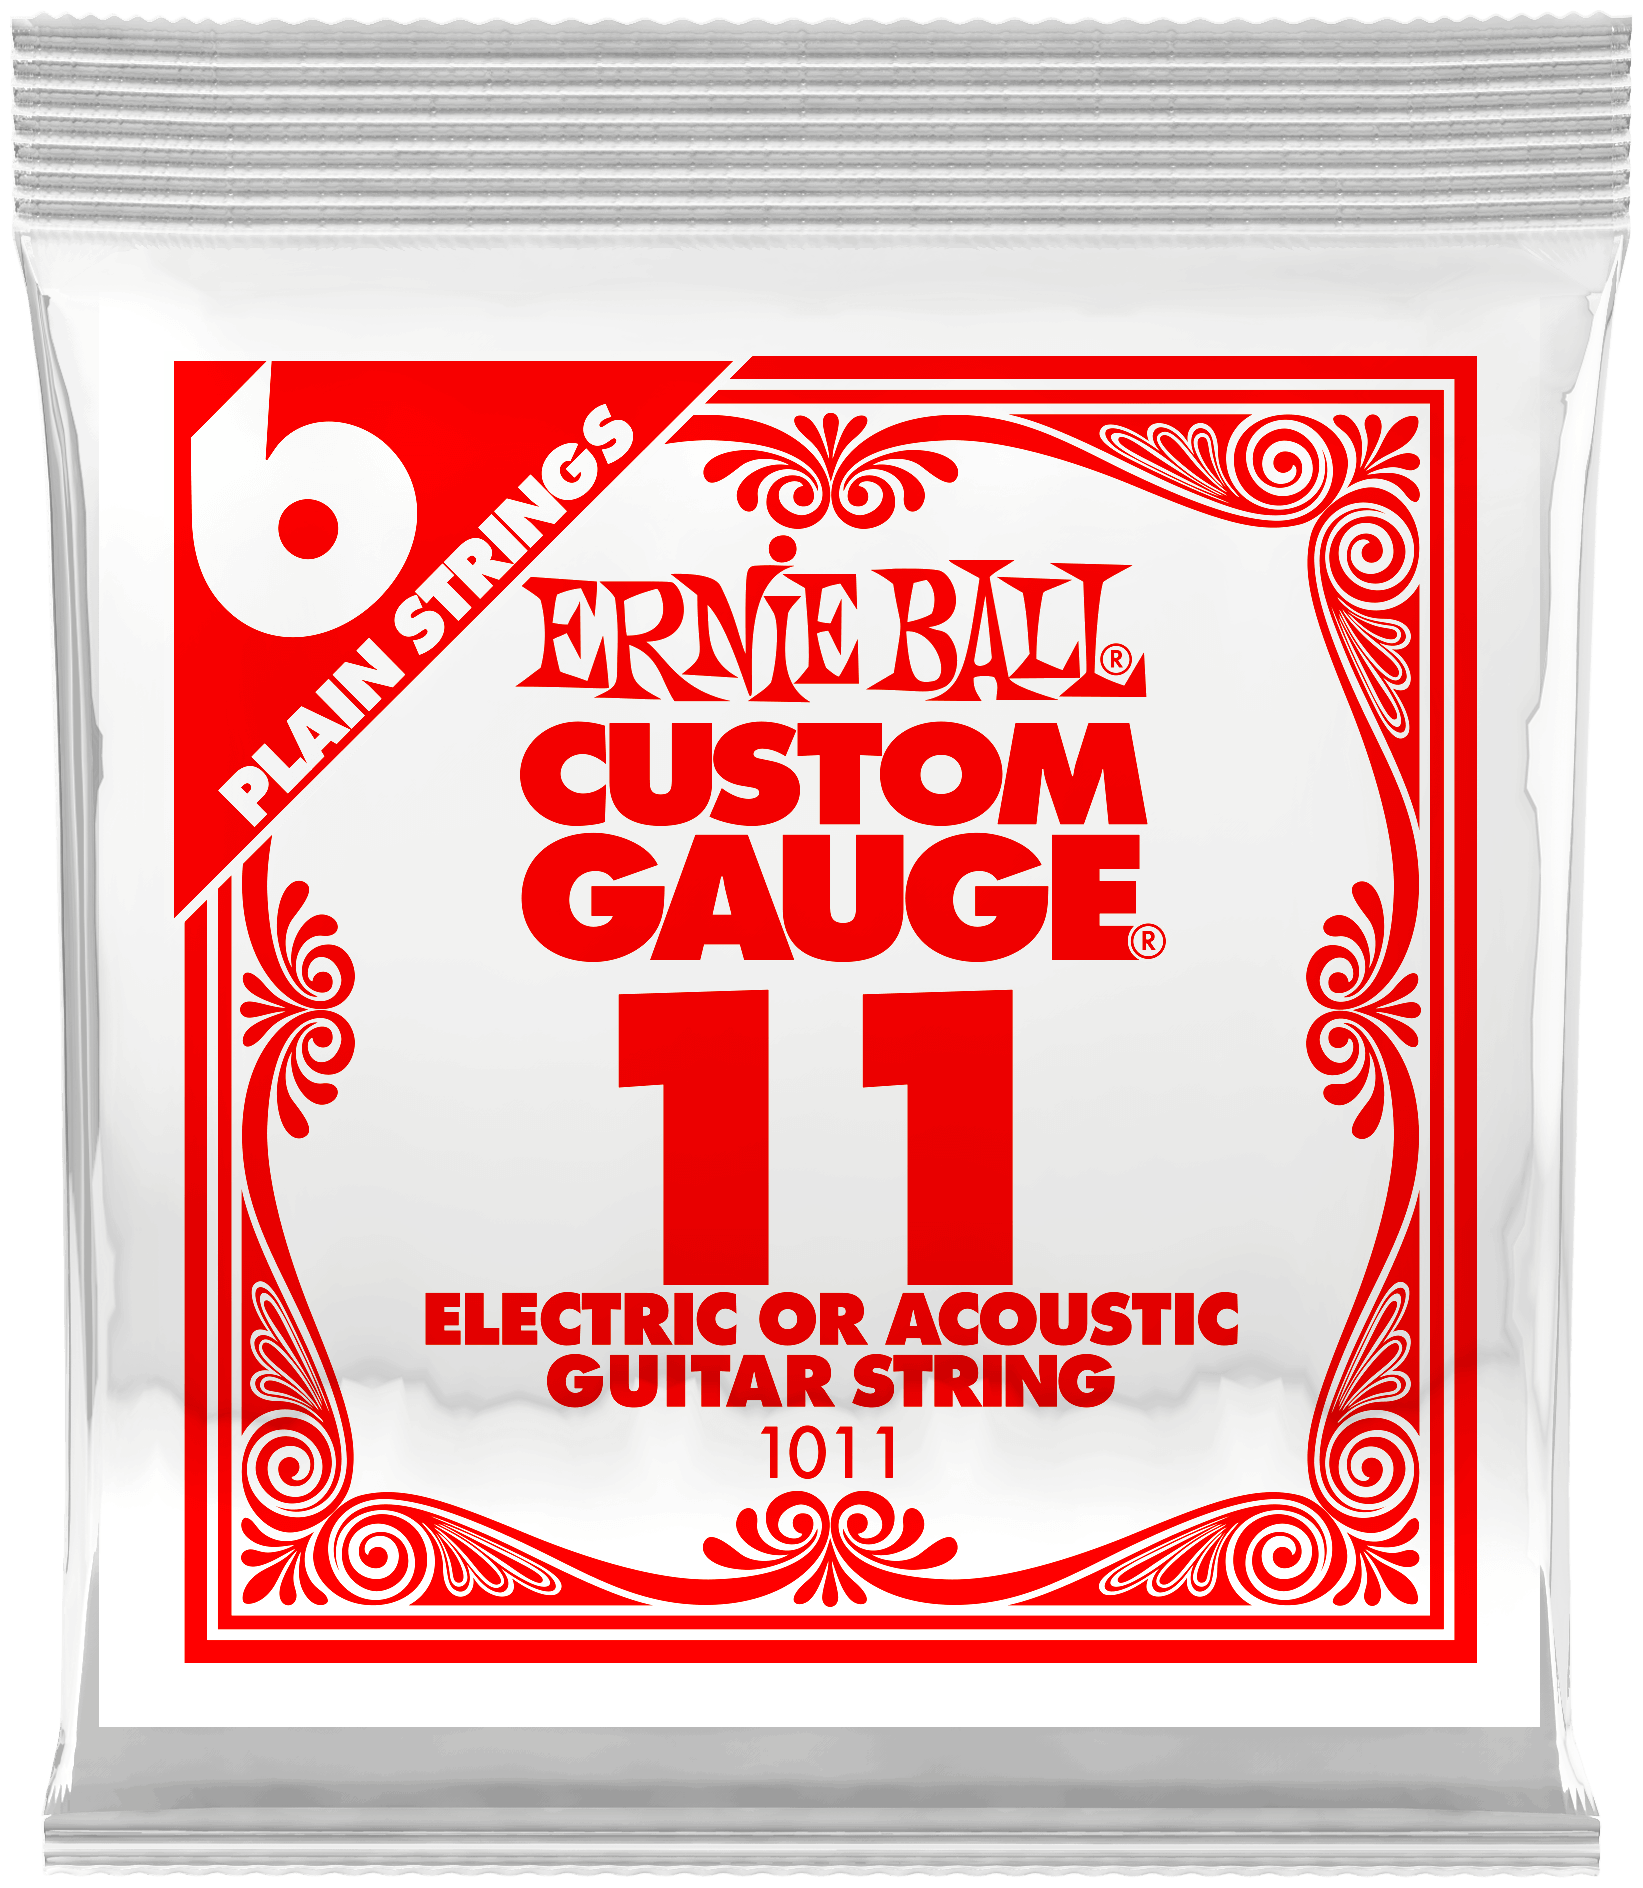 Одиночная струна для электро и акустической гитары 11 Ernie Ball 1011